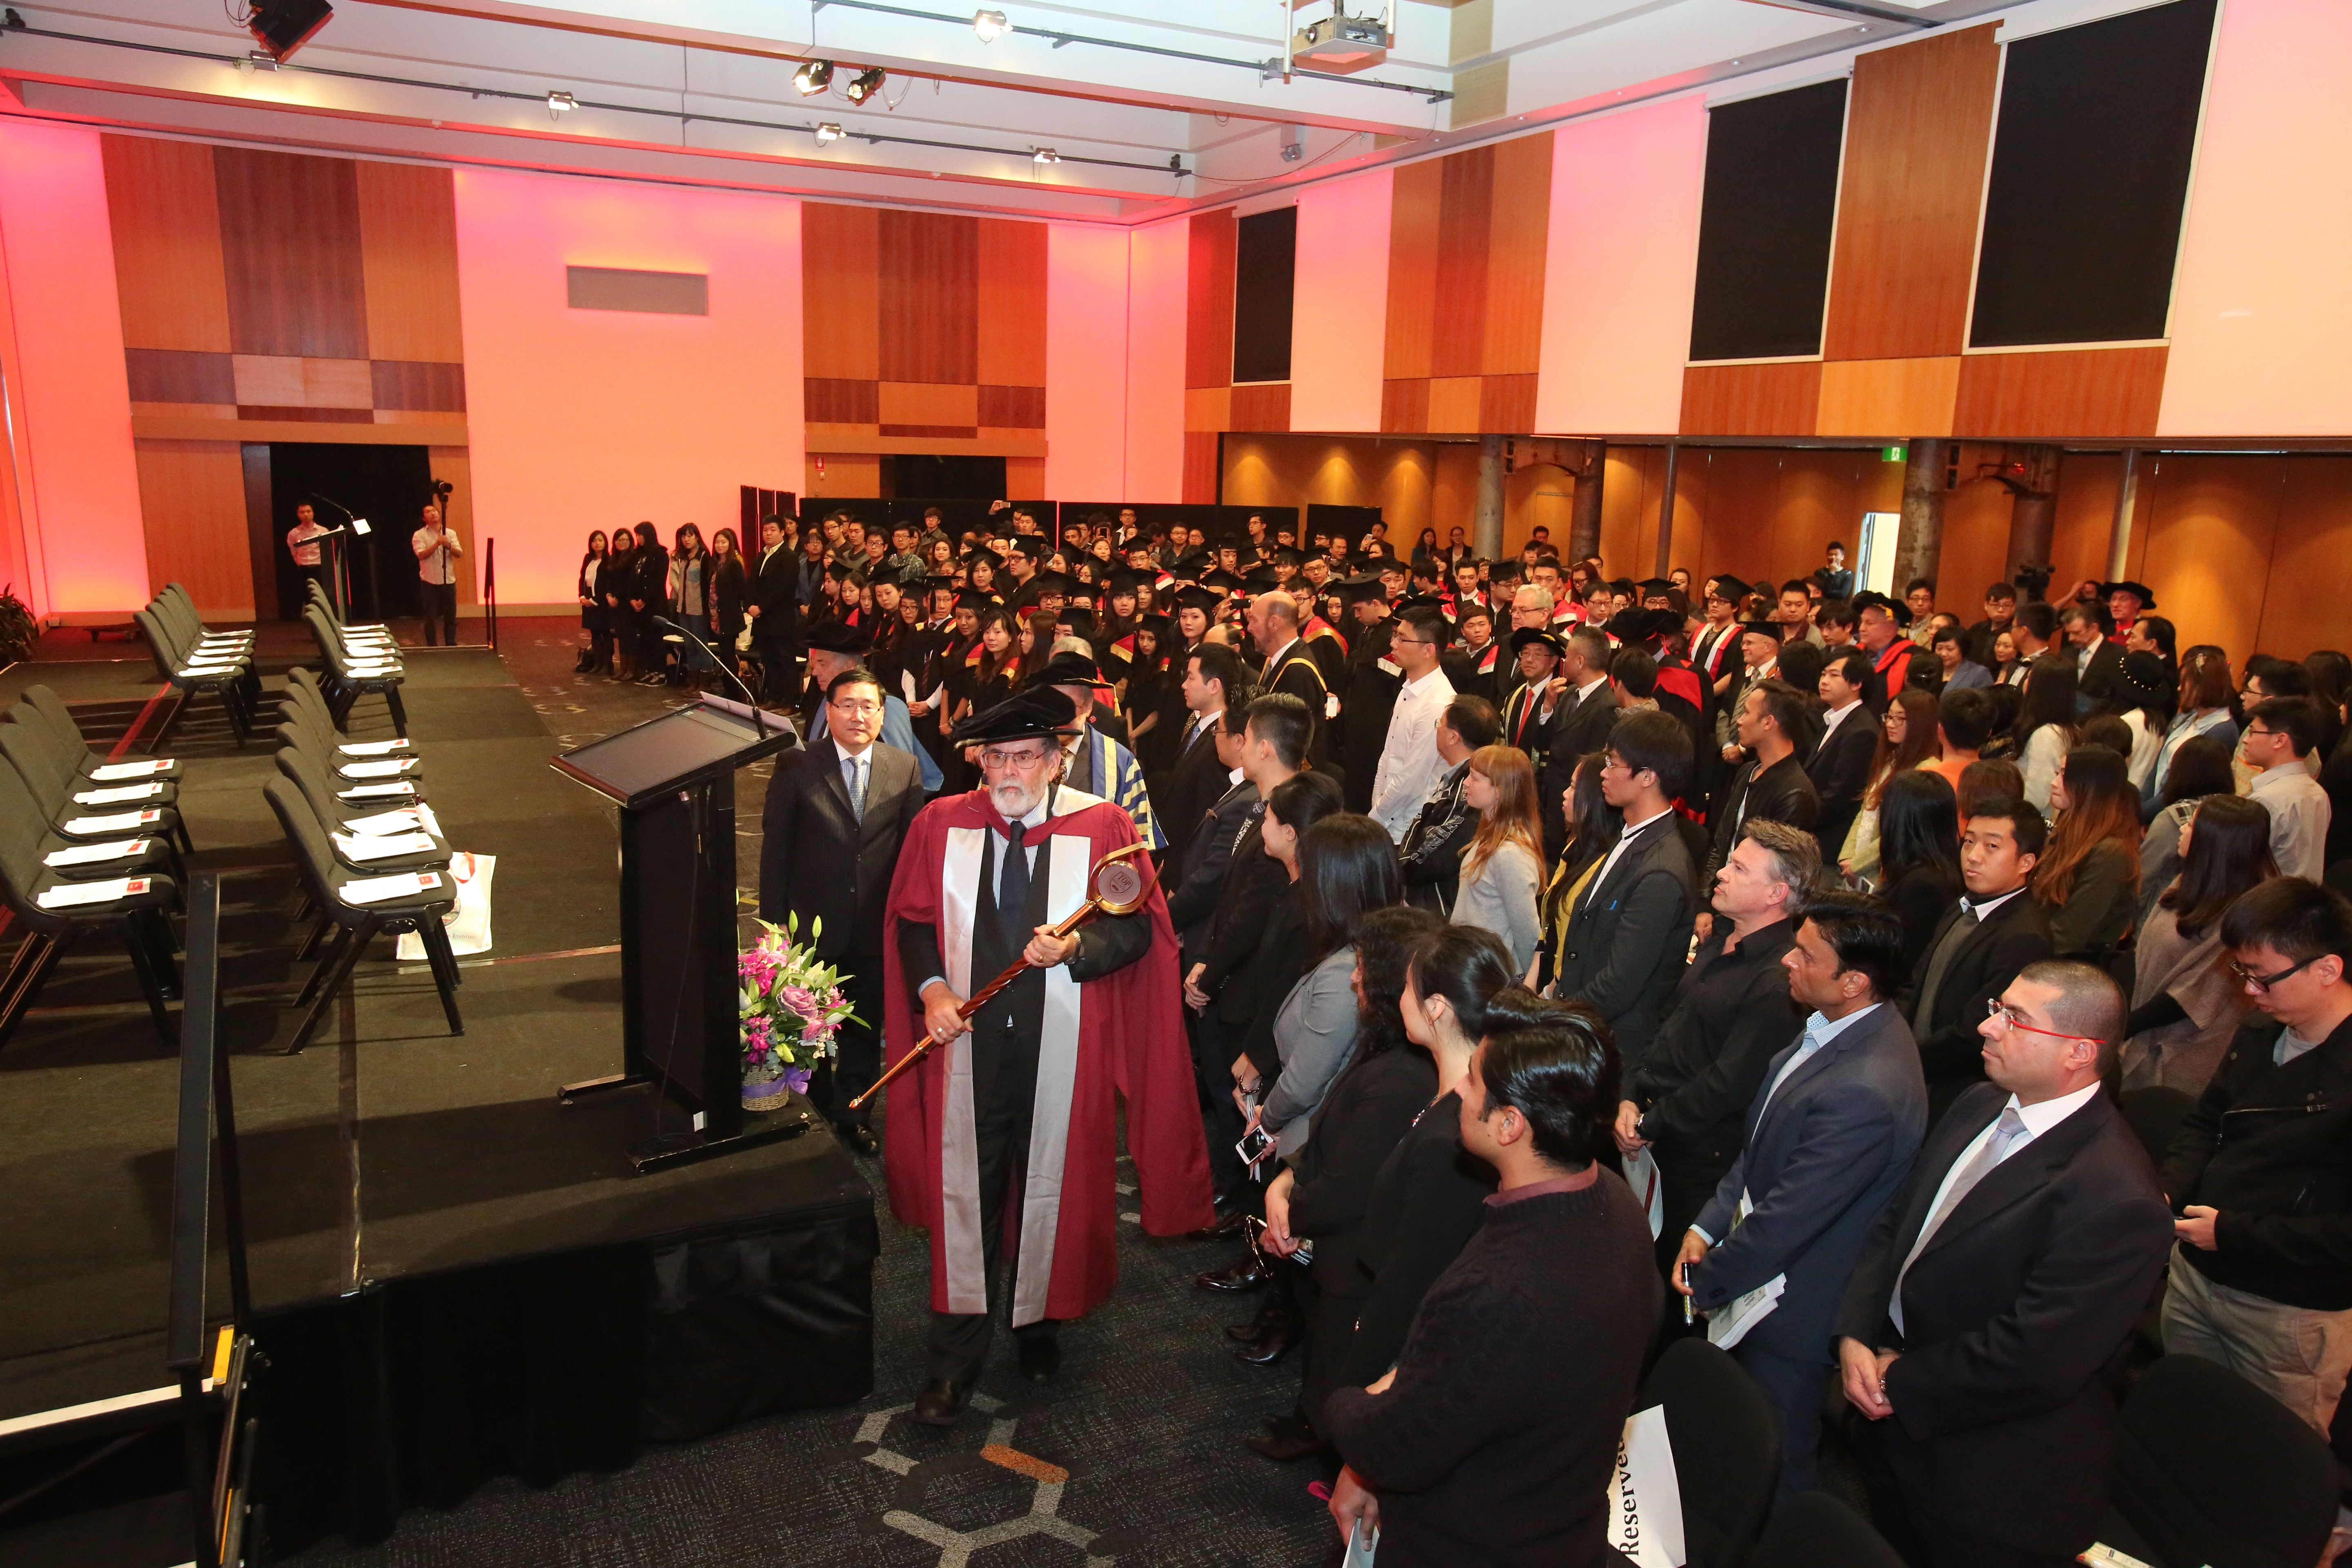 Graduation ceremony at Top Education Institute